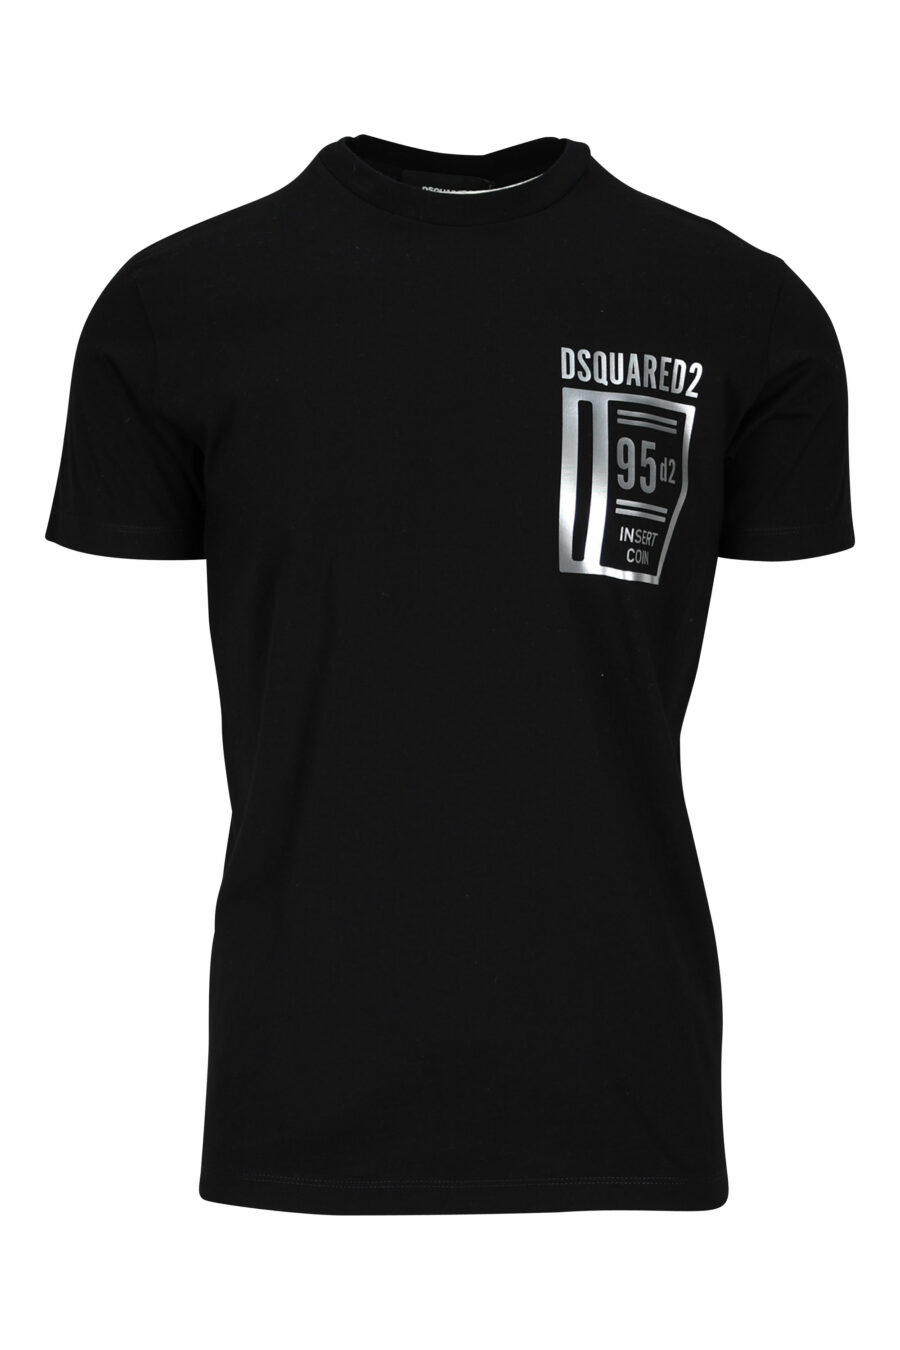 T-shirt noir avec logo argenté et imprimé porte-monnaie - 8052134940457